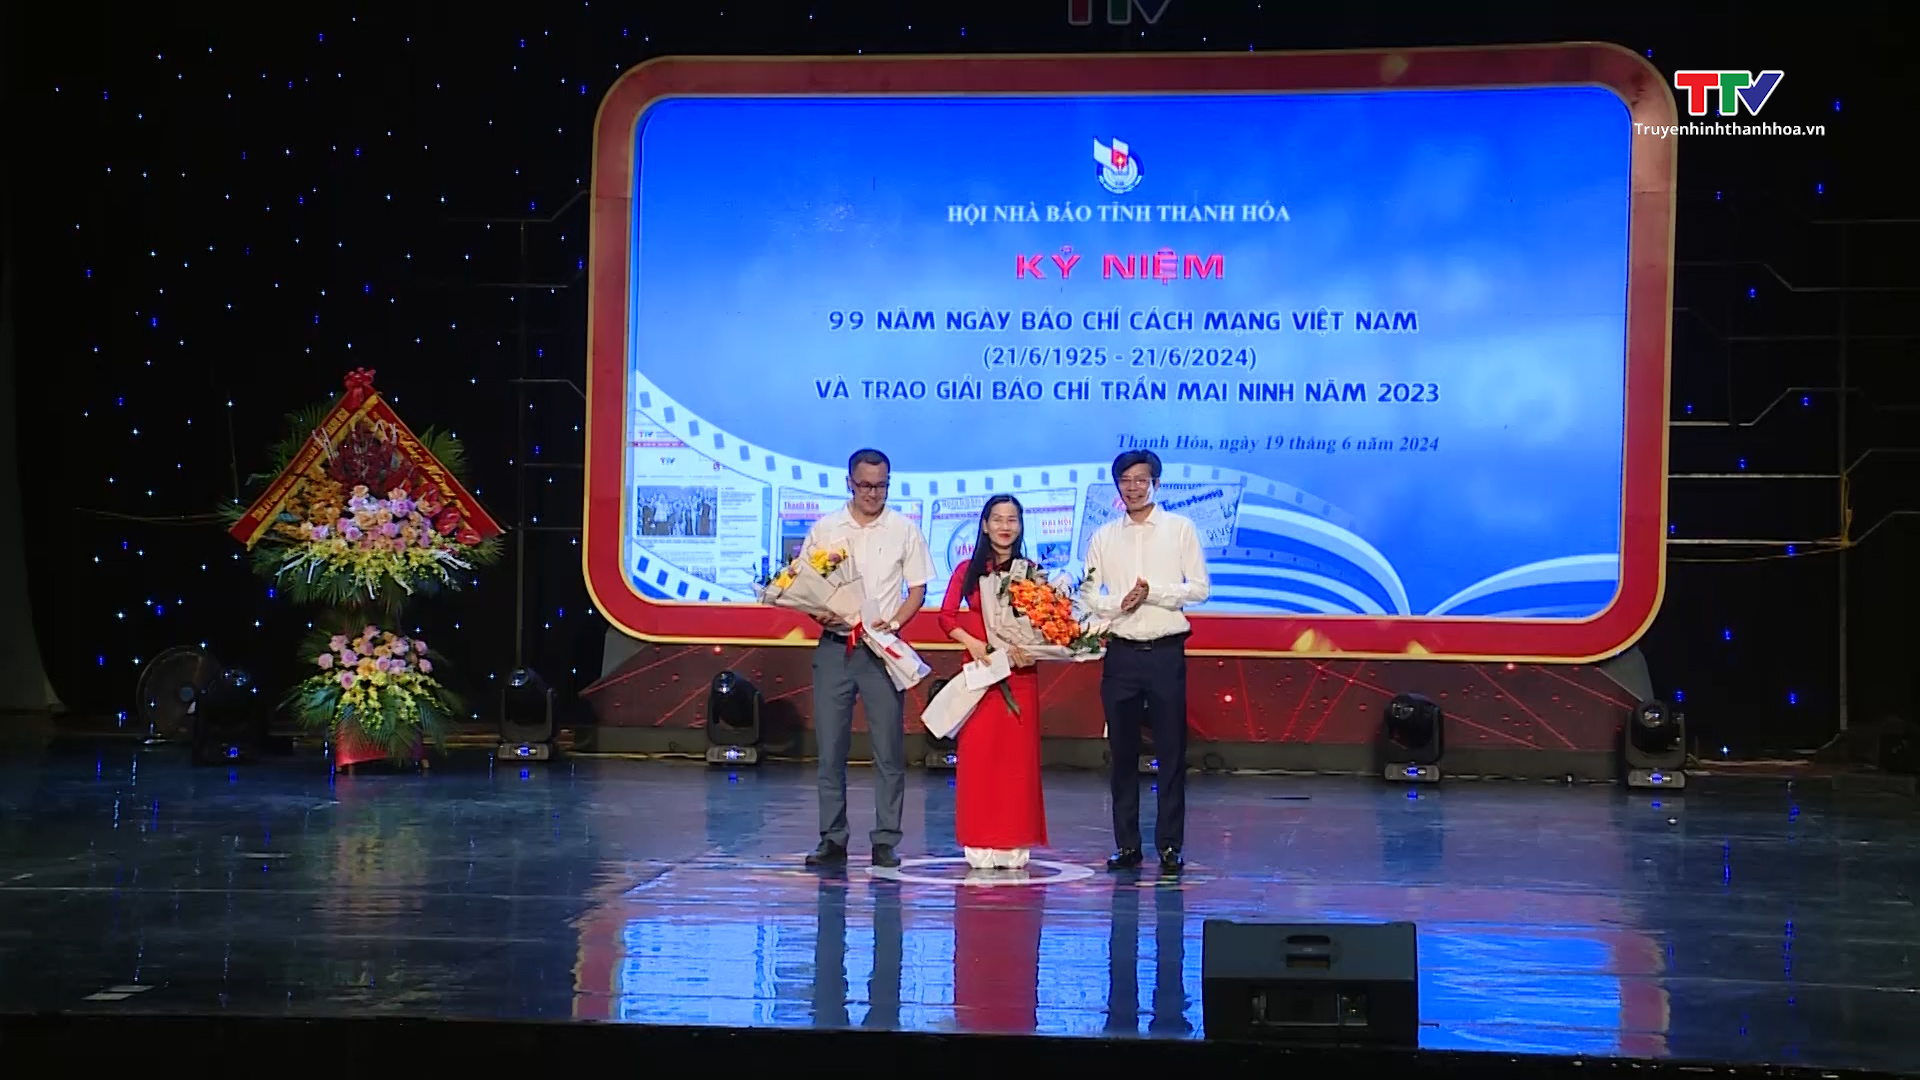 Kỷ niệm 99 năm Ngày Báo chí cách mạng Việt Nam và trao Giải báo chí Trần Mai Ninh năm 2023- Ảnh 9.